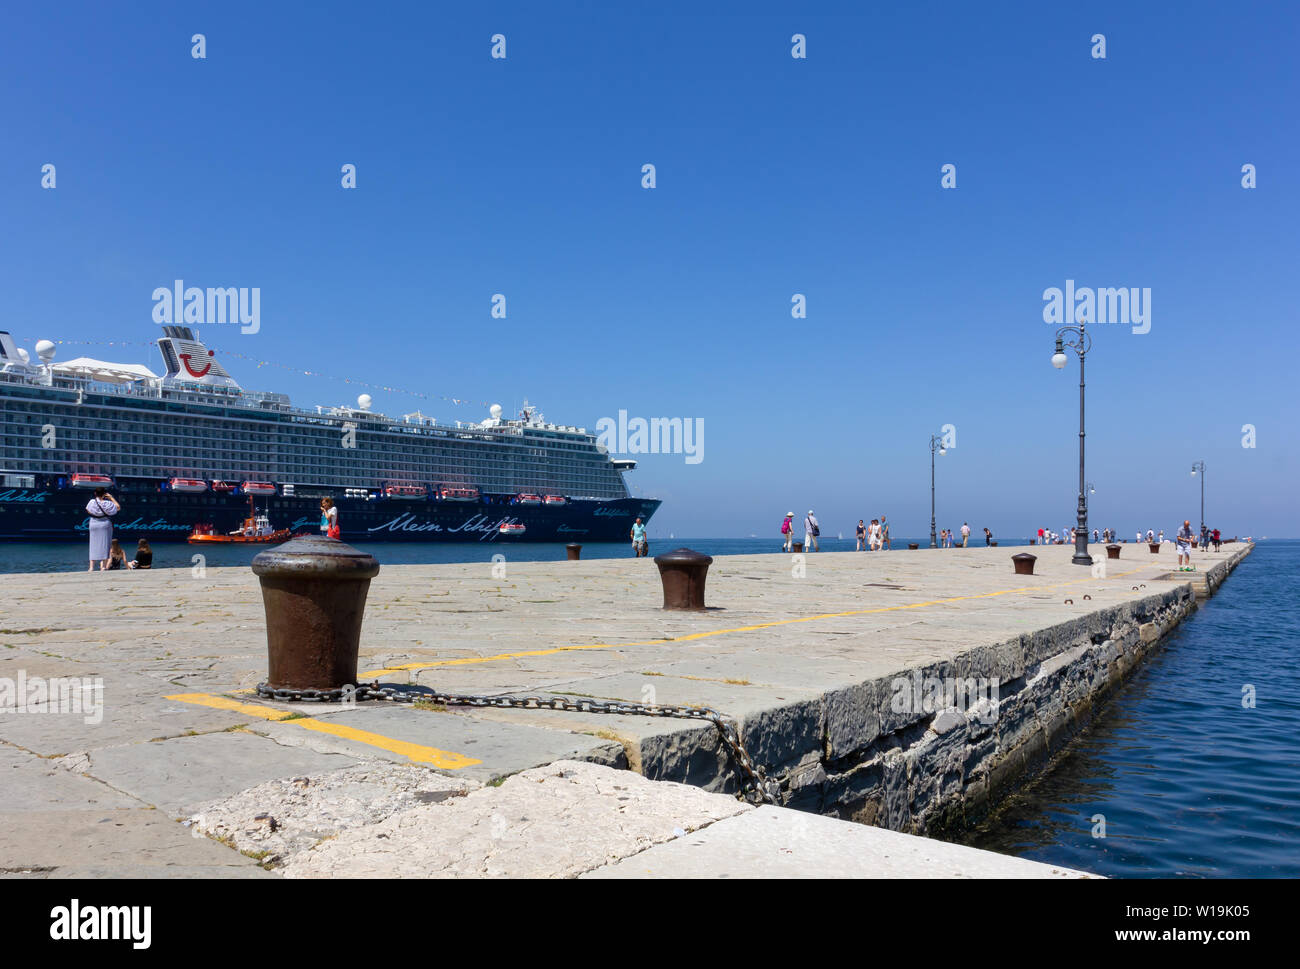 TRIESTE, Italie - 16 juin 2019 : les touristes se promener le long de la jetée d'Audace sur le front de mer de la ville et le bateau de croisière Mein Schiff 6 amarré à côté Banque D'Images